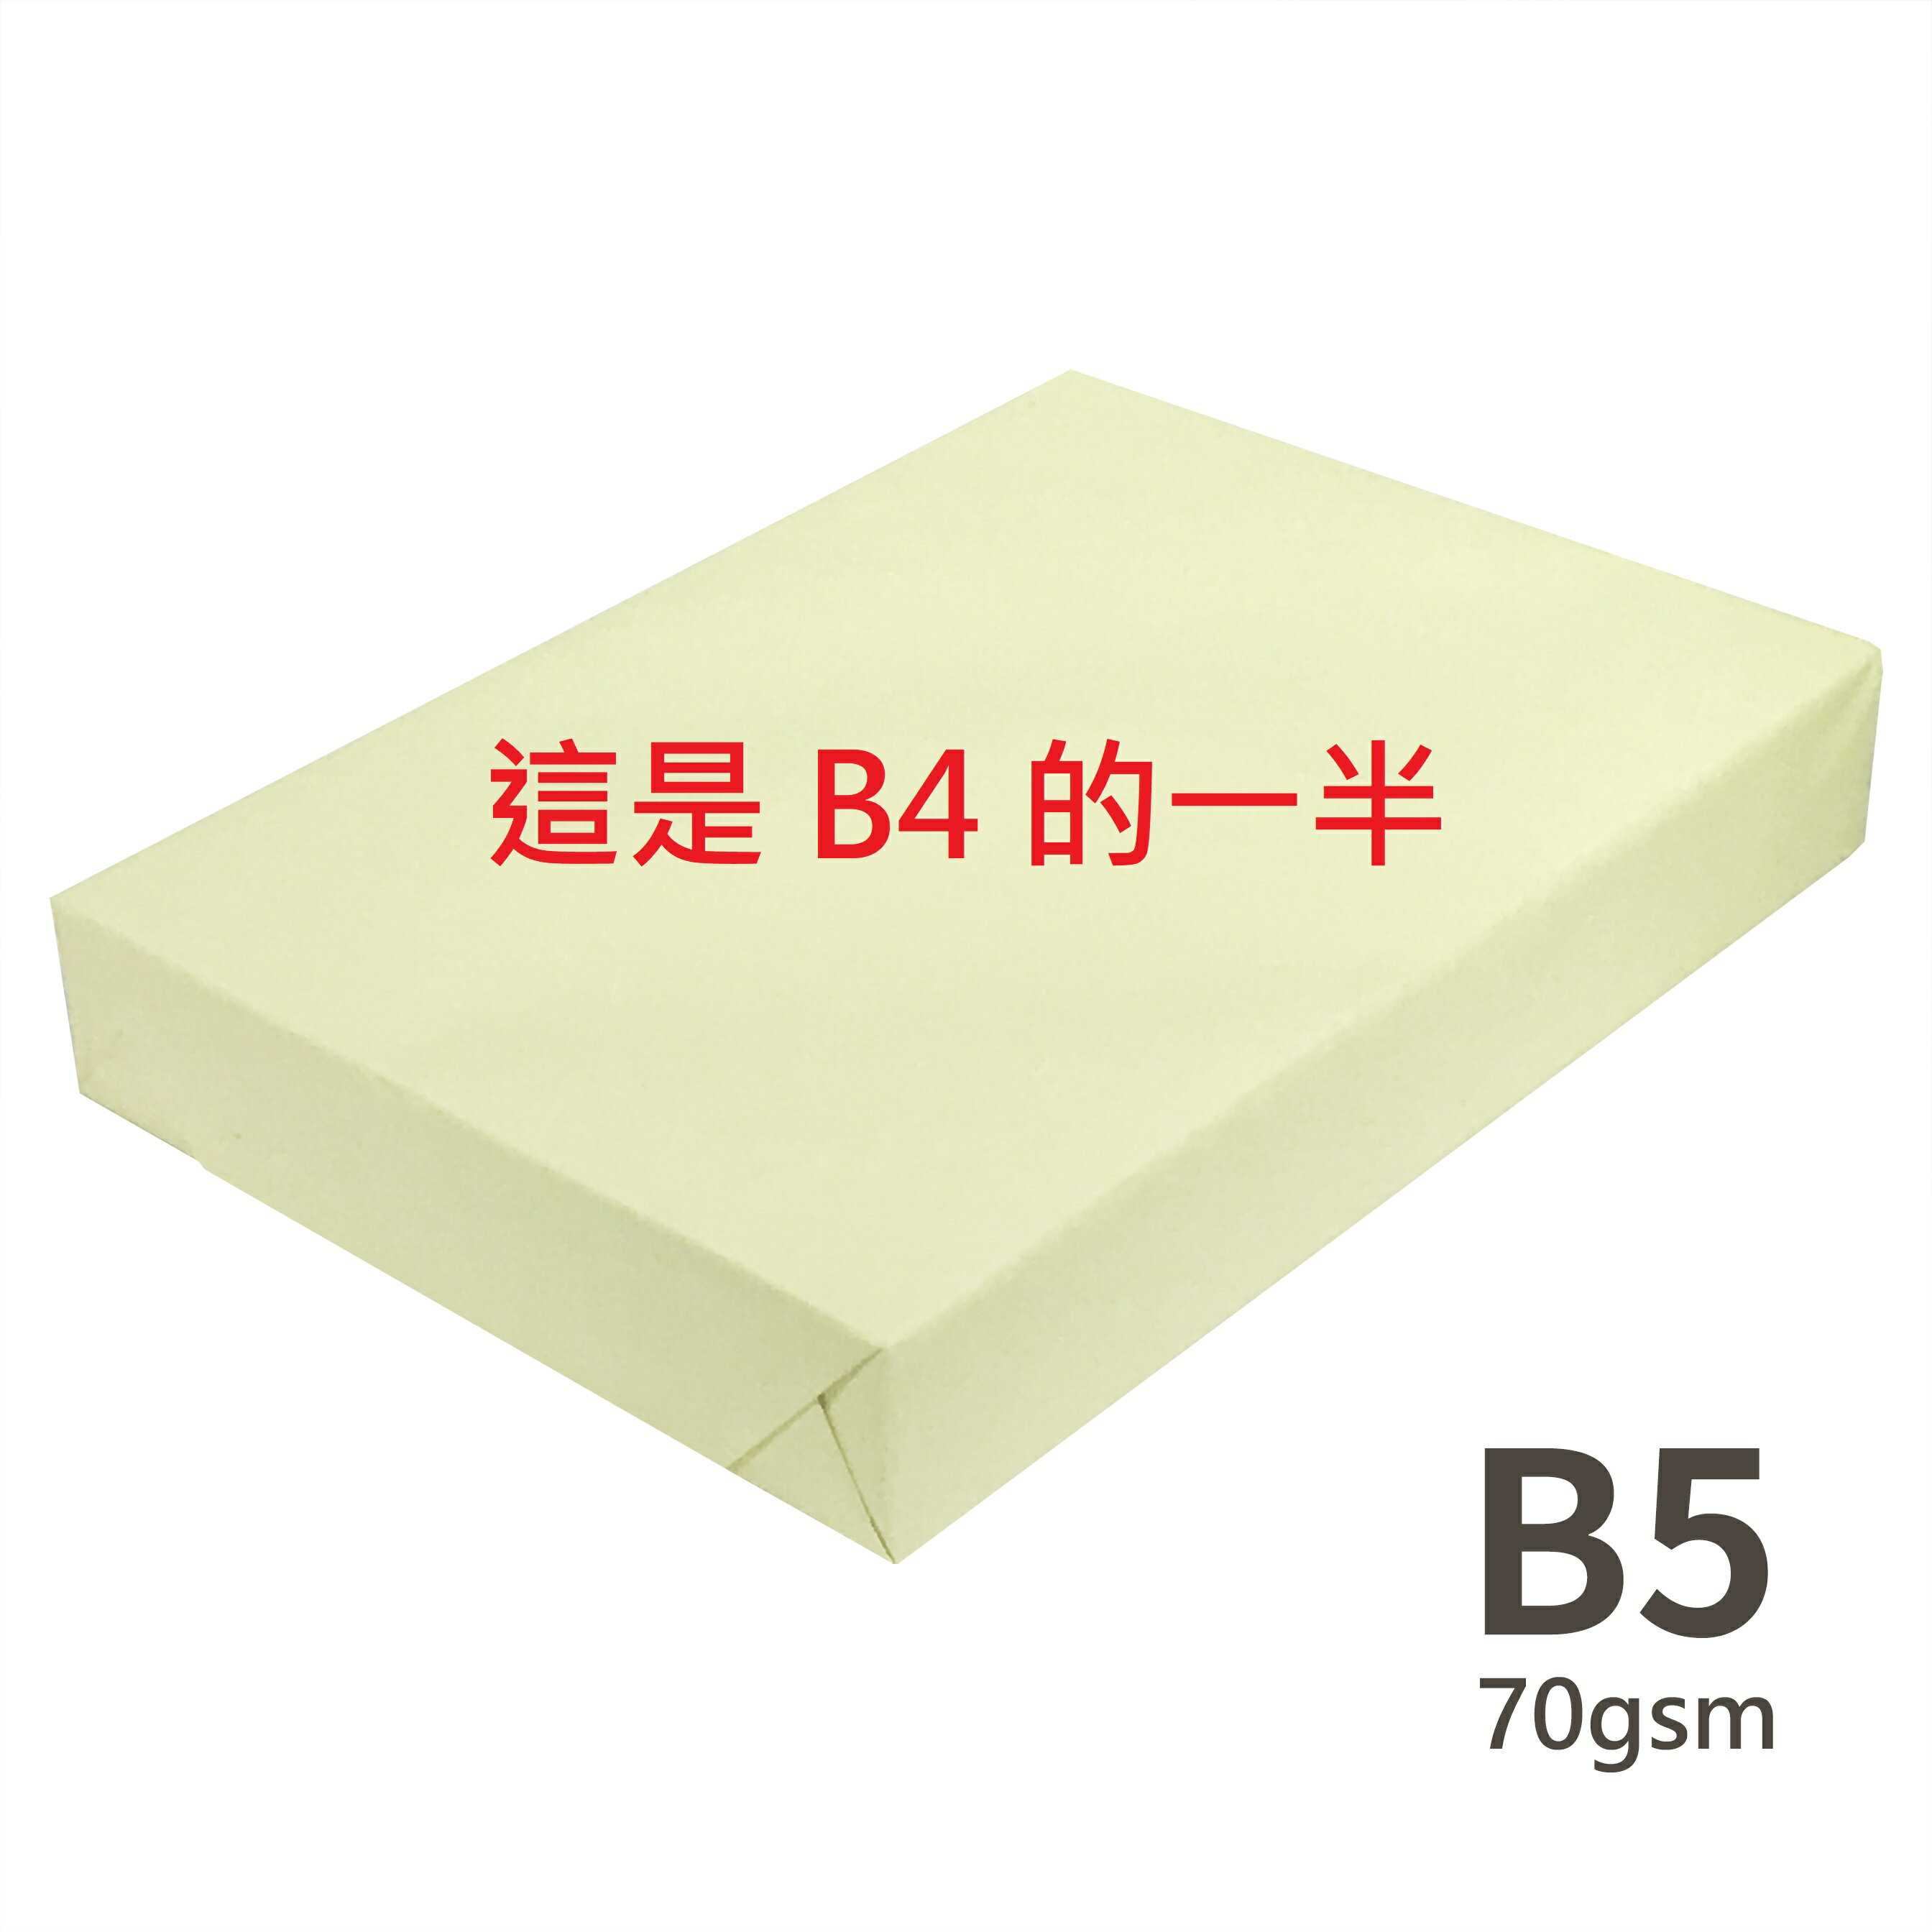 影印紙 彩色 B5 (這是 B4 的一半) 70gsm 或 80gsm size 182 × 257mm 500 sheets 1包 500張 P1410072